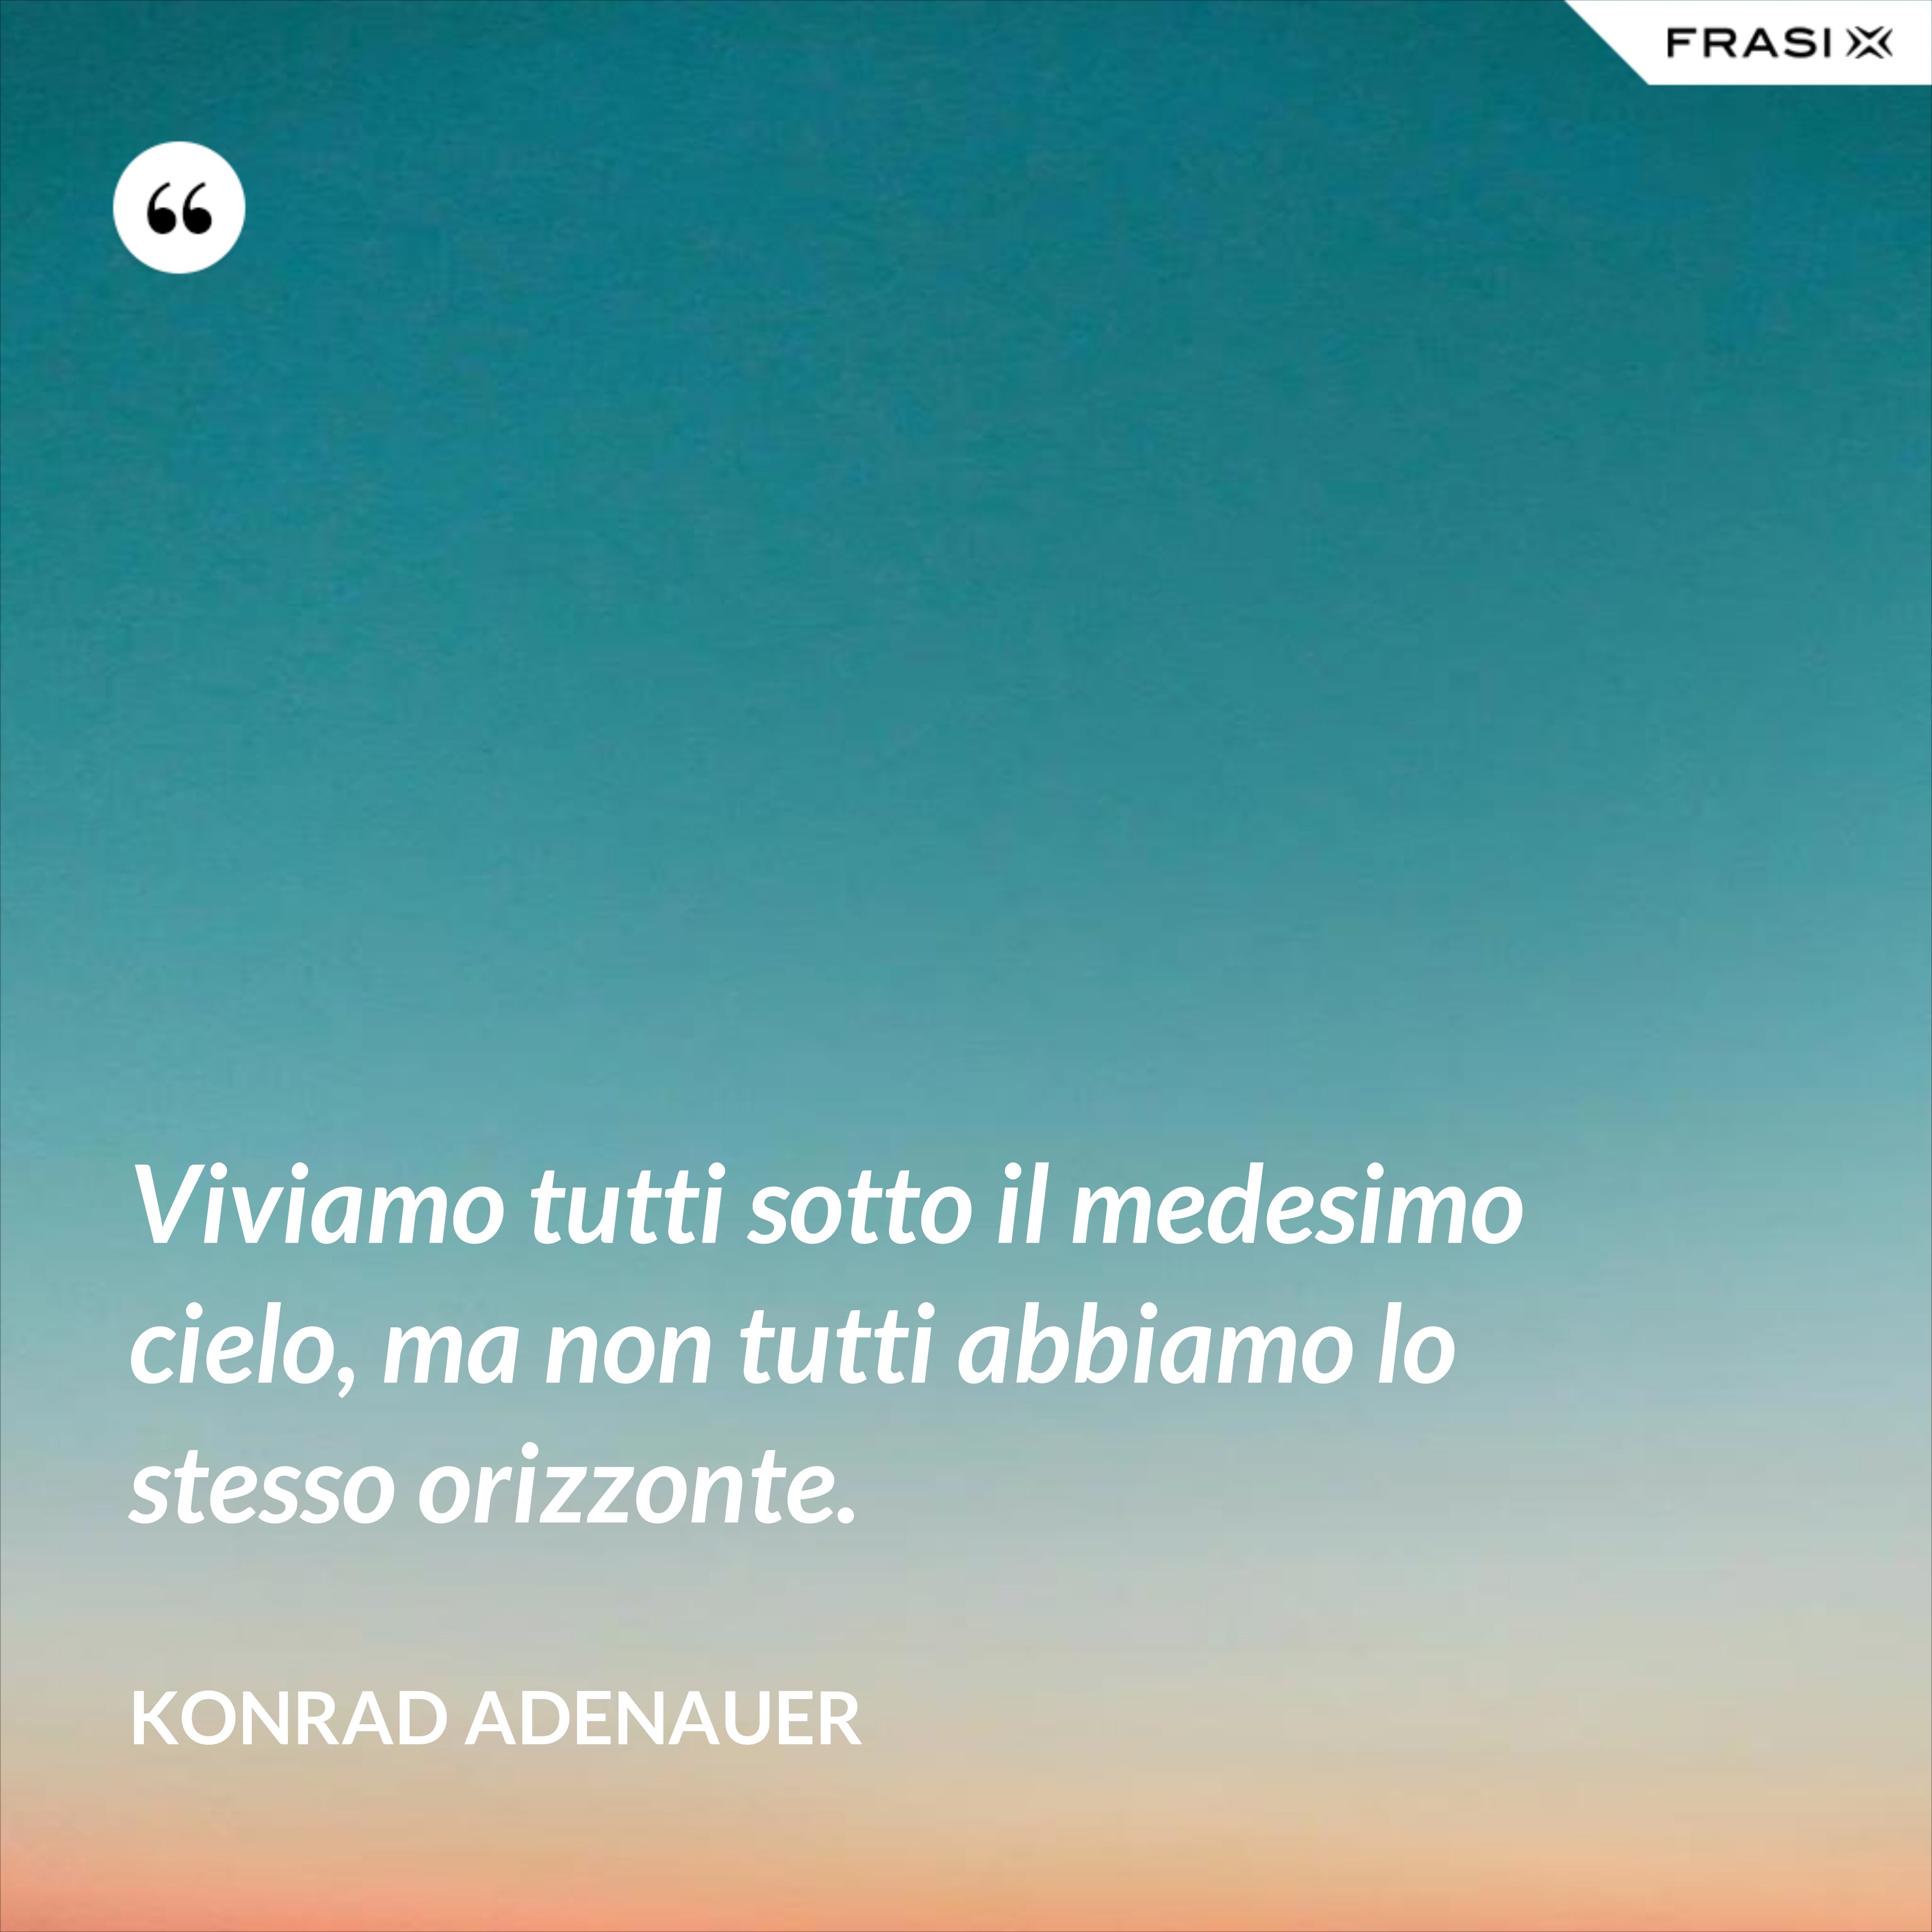 Viviamo tutti sotto il medesimo cielo, ma non tutti abbiamo lo stesso orizzonte. - Konrad Adenauer